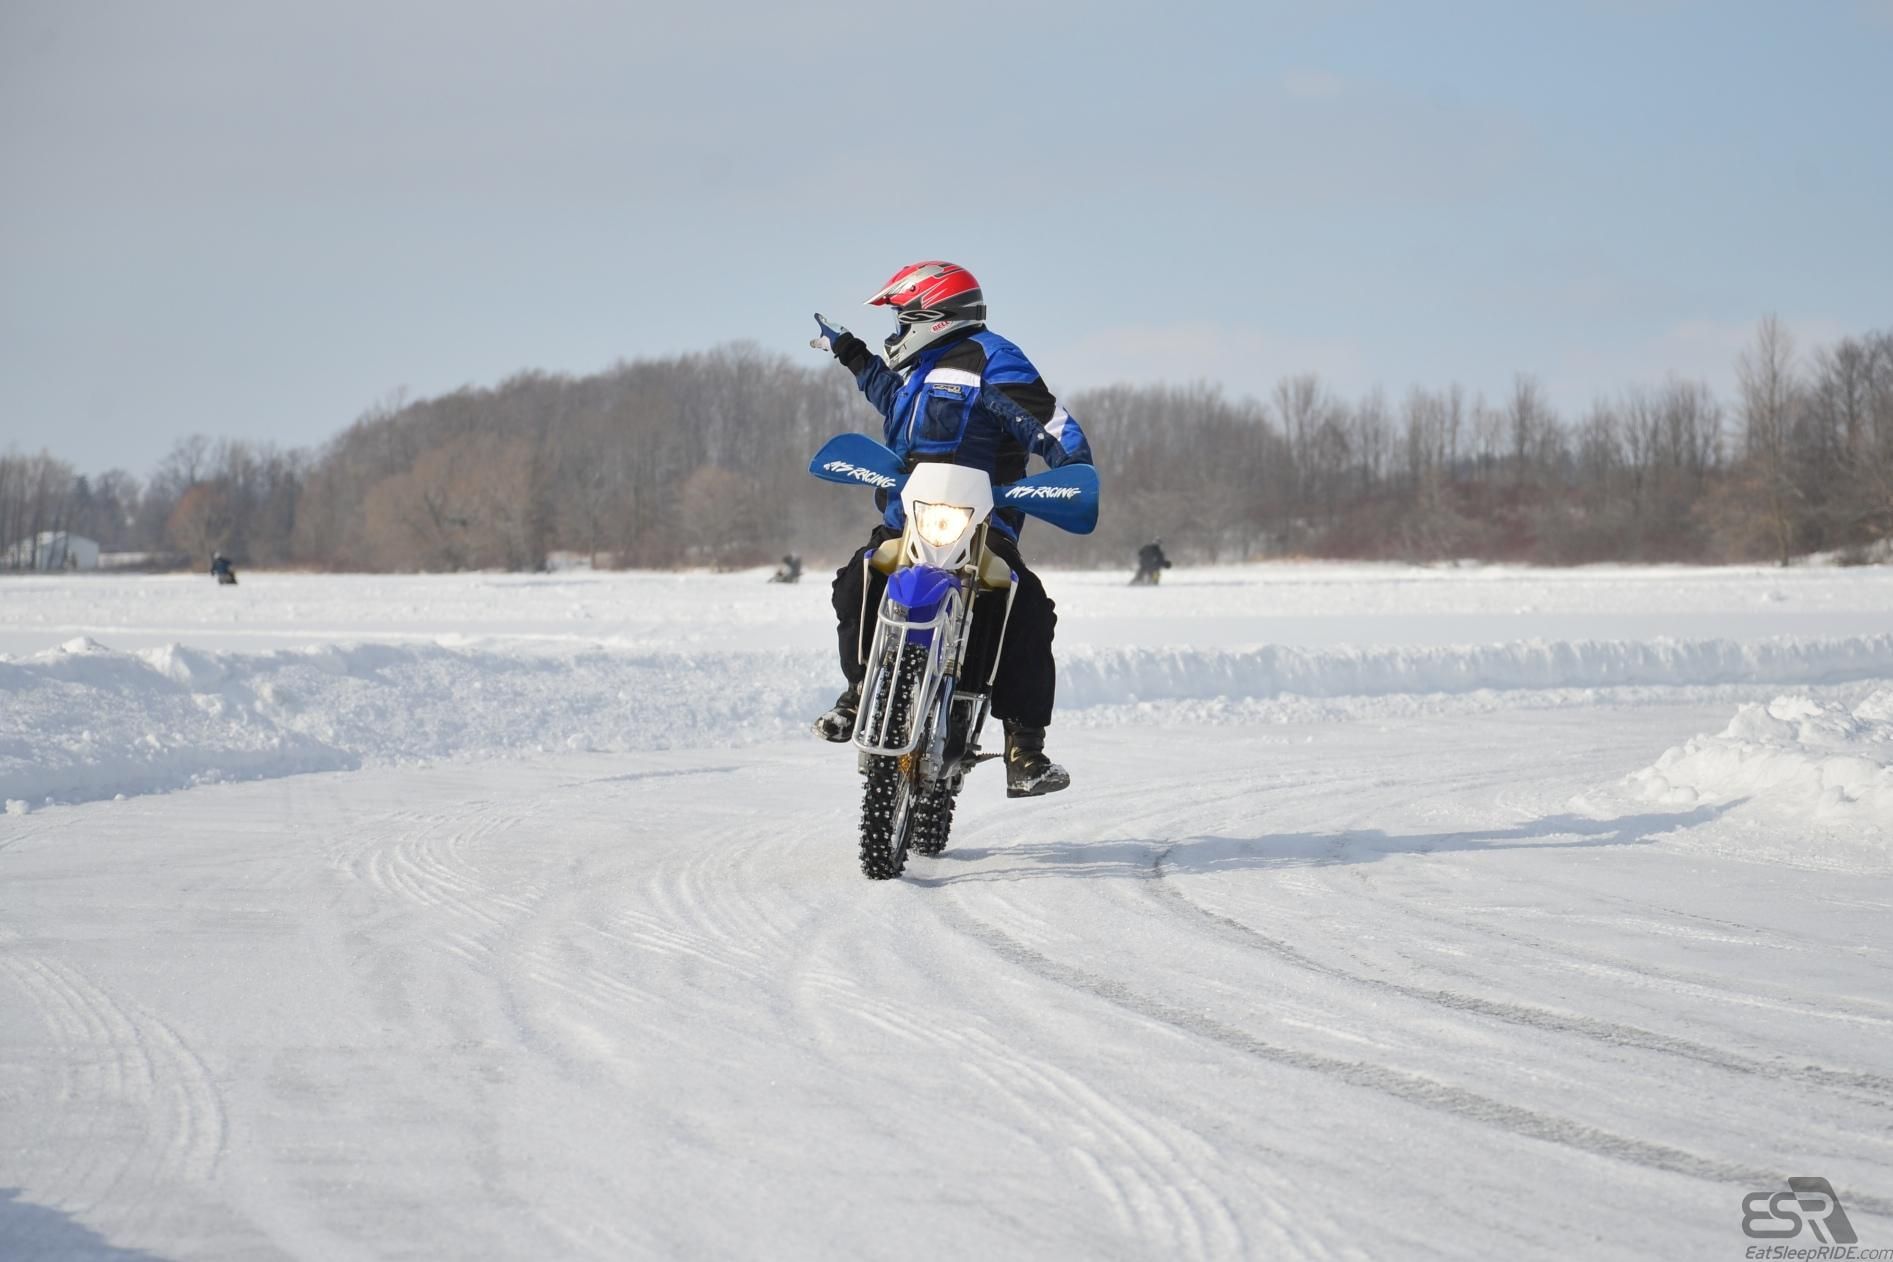 Blue - Ice riding